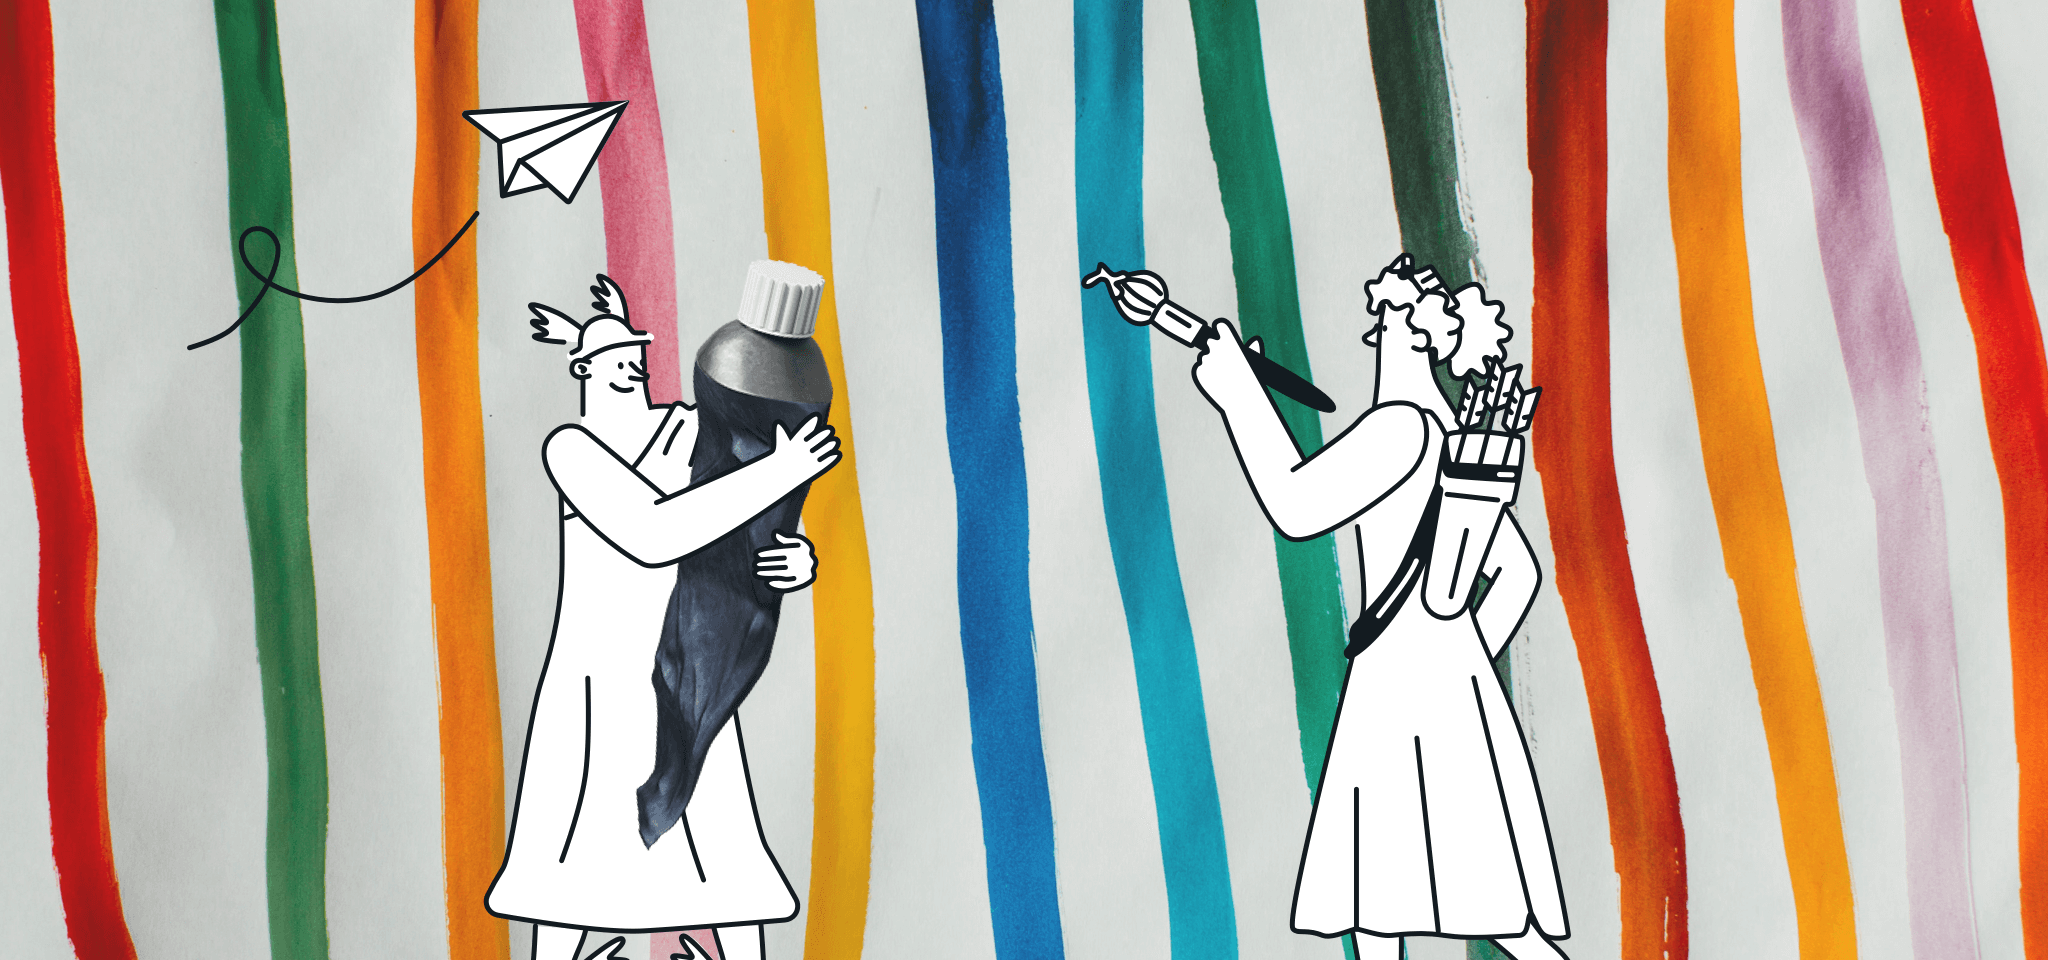 Hermes ayuda a una diosa a pintar una líneas coloridas